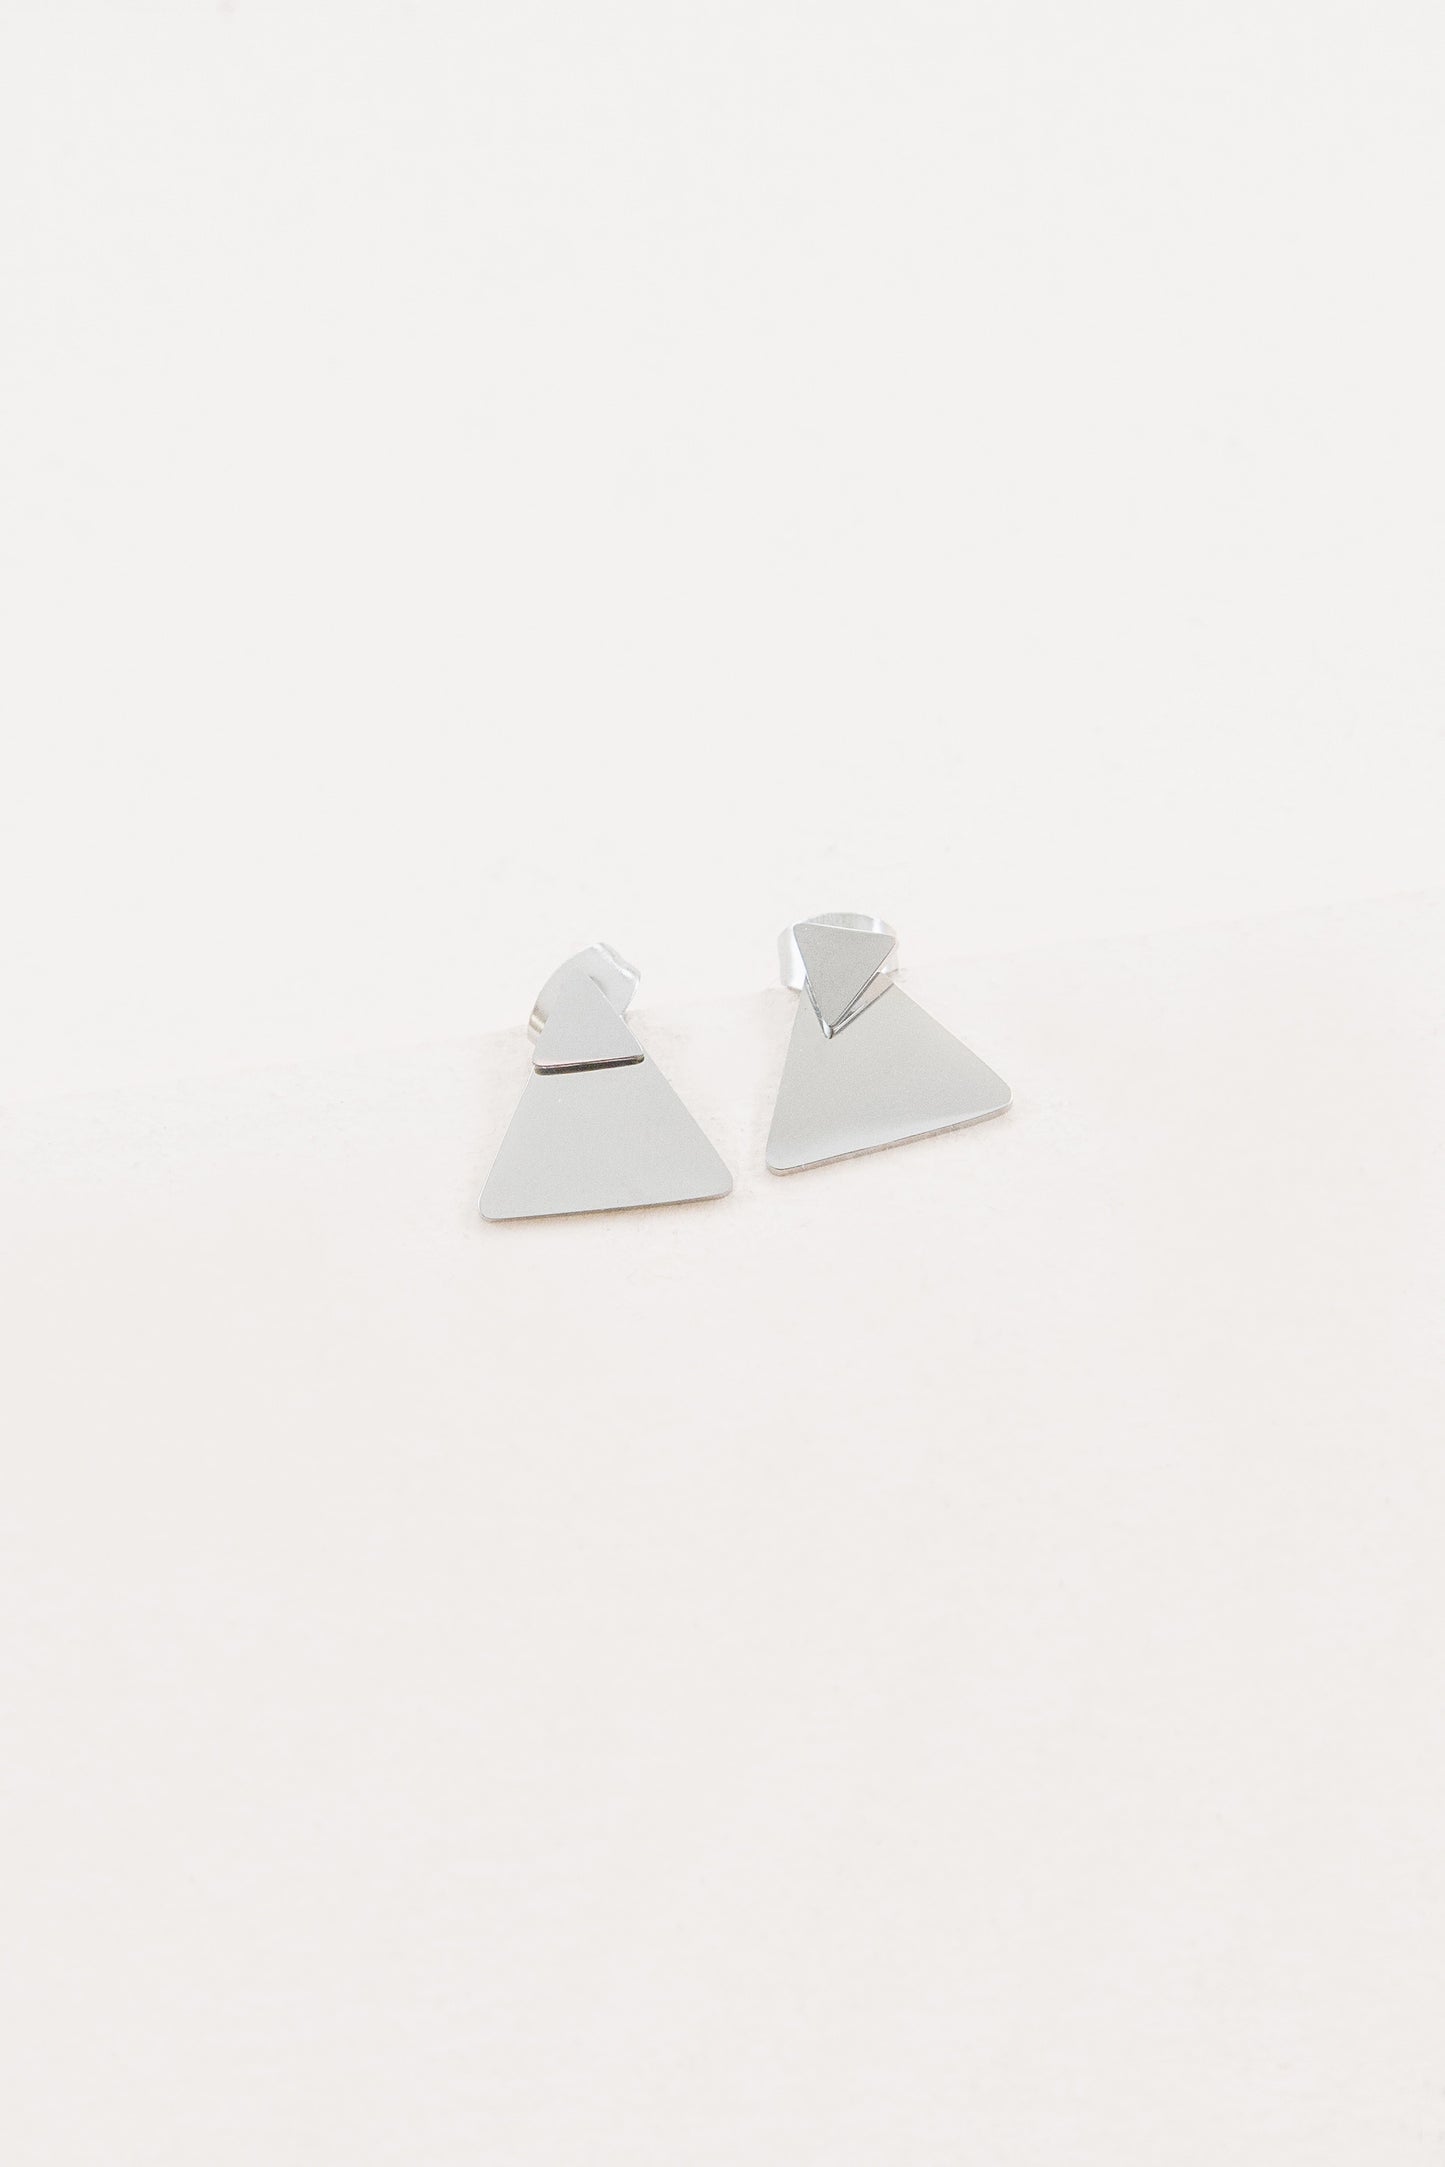 All Triangle Ear Jacket Earrings | Silver